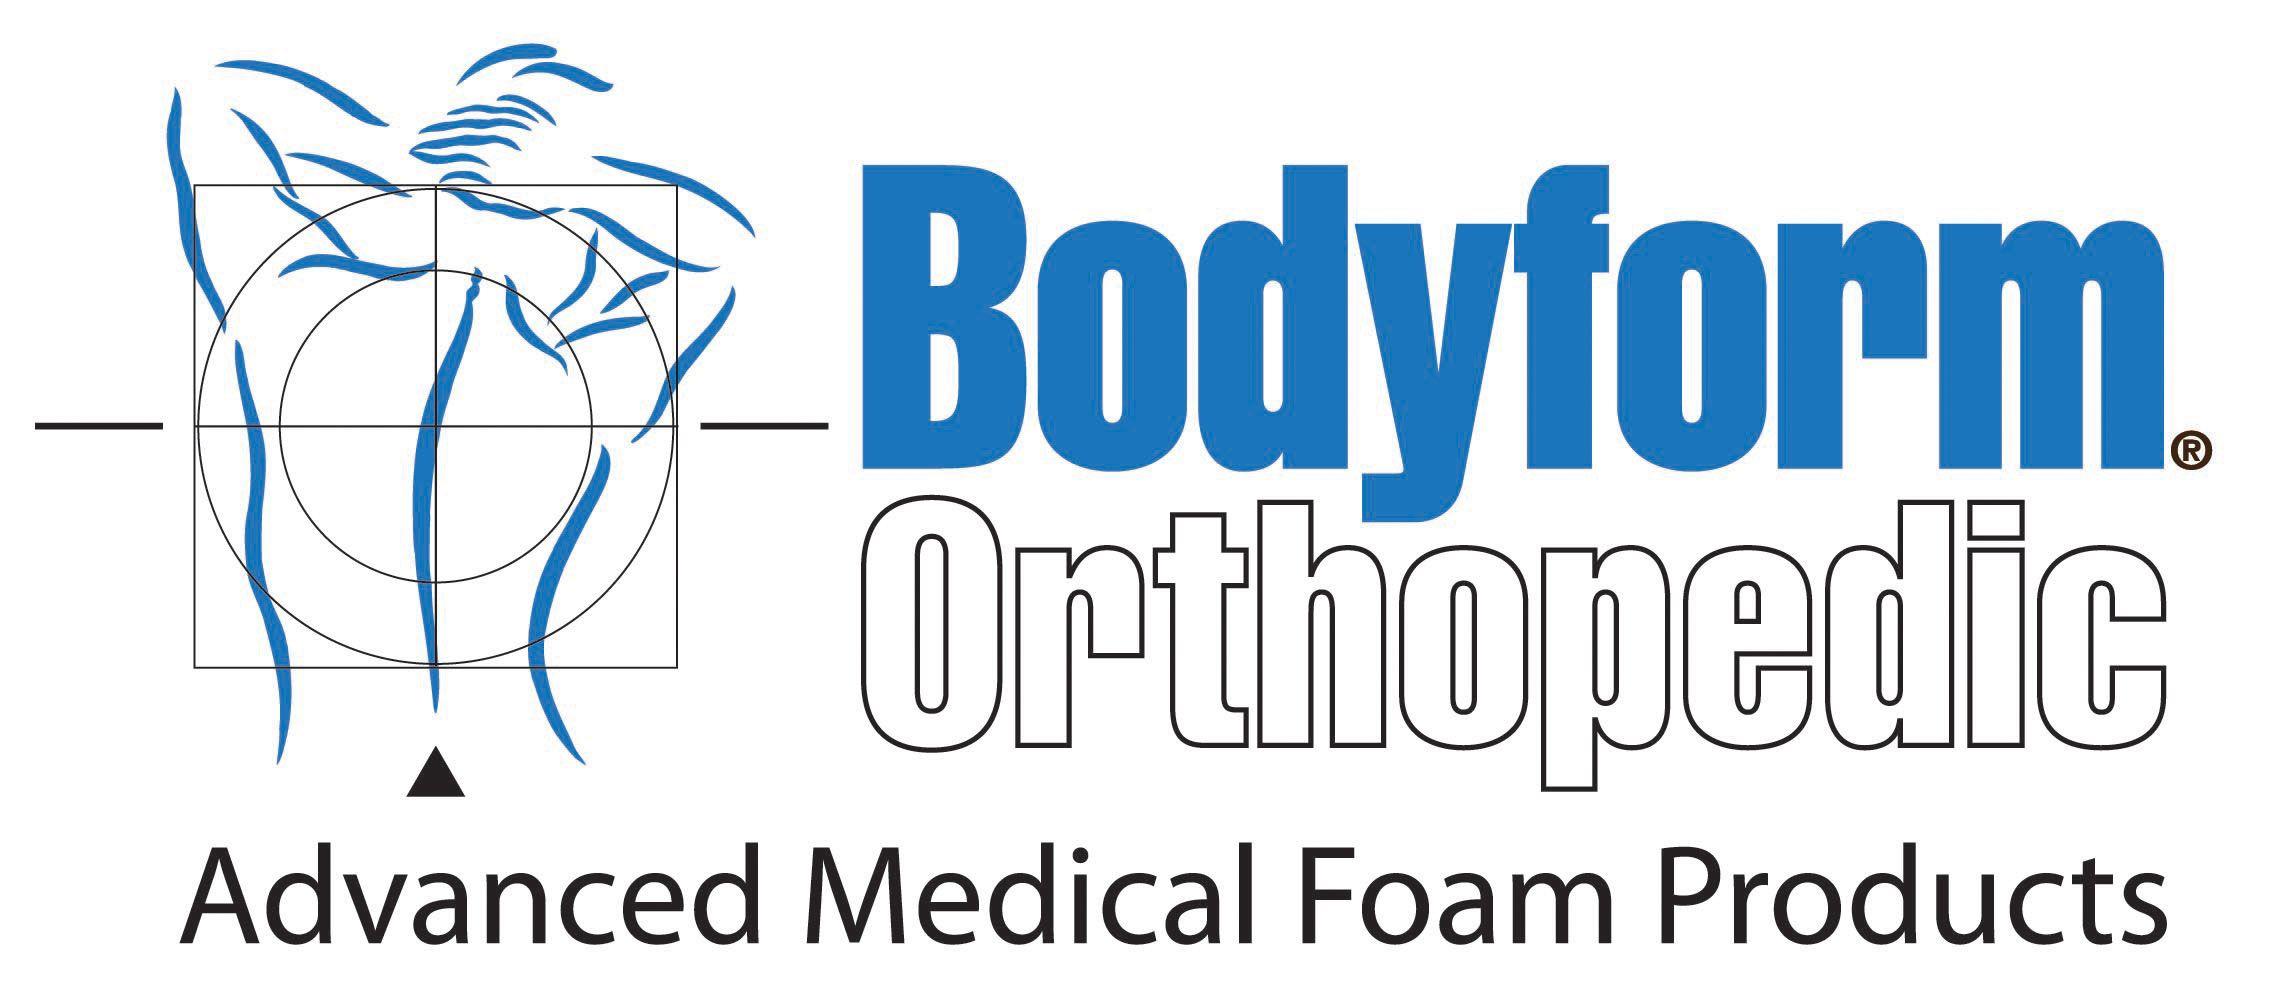 Orthopedic Logo - Bodyform-Orthopedic-Logo - BodyForm Orthopedic | BodyForm Orthopedic